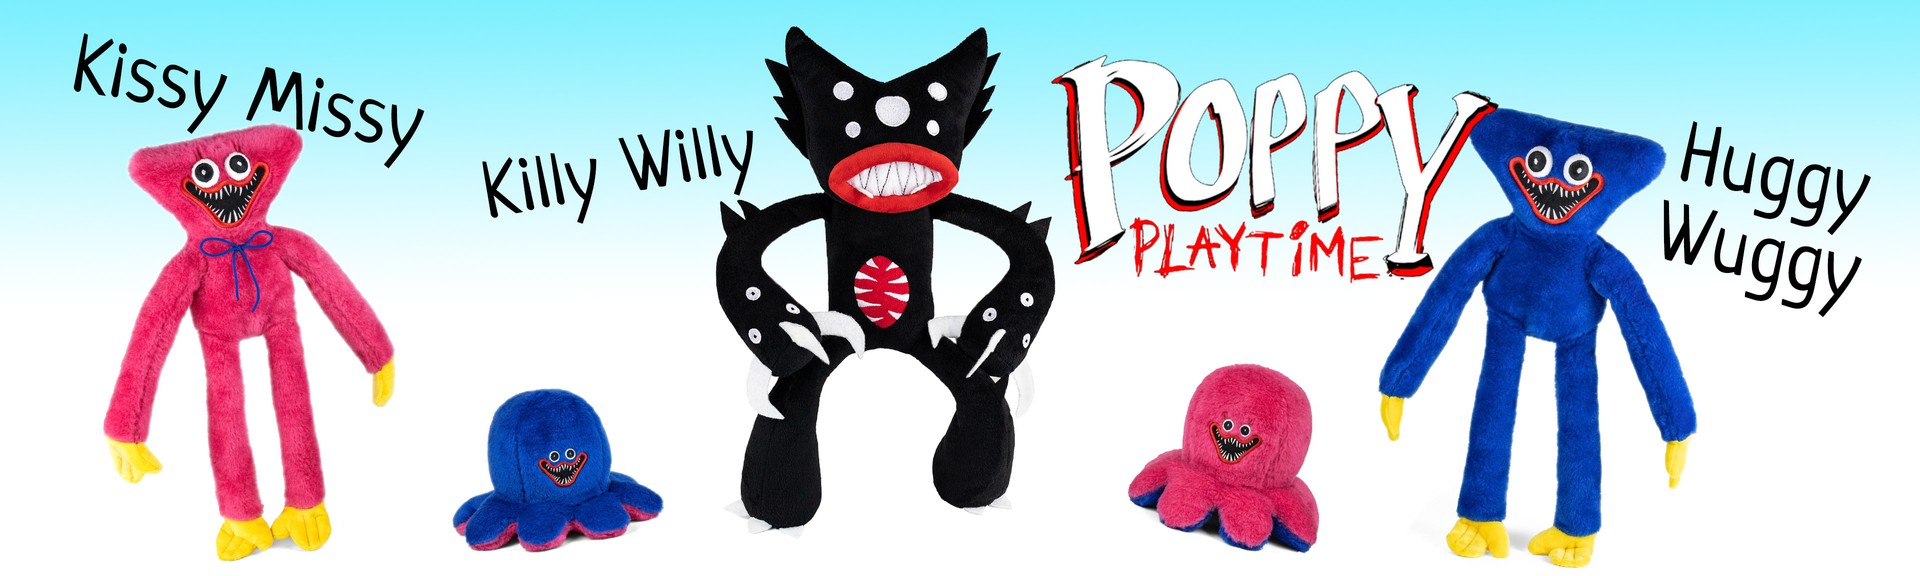 игрушки Poppy Playtime